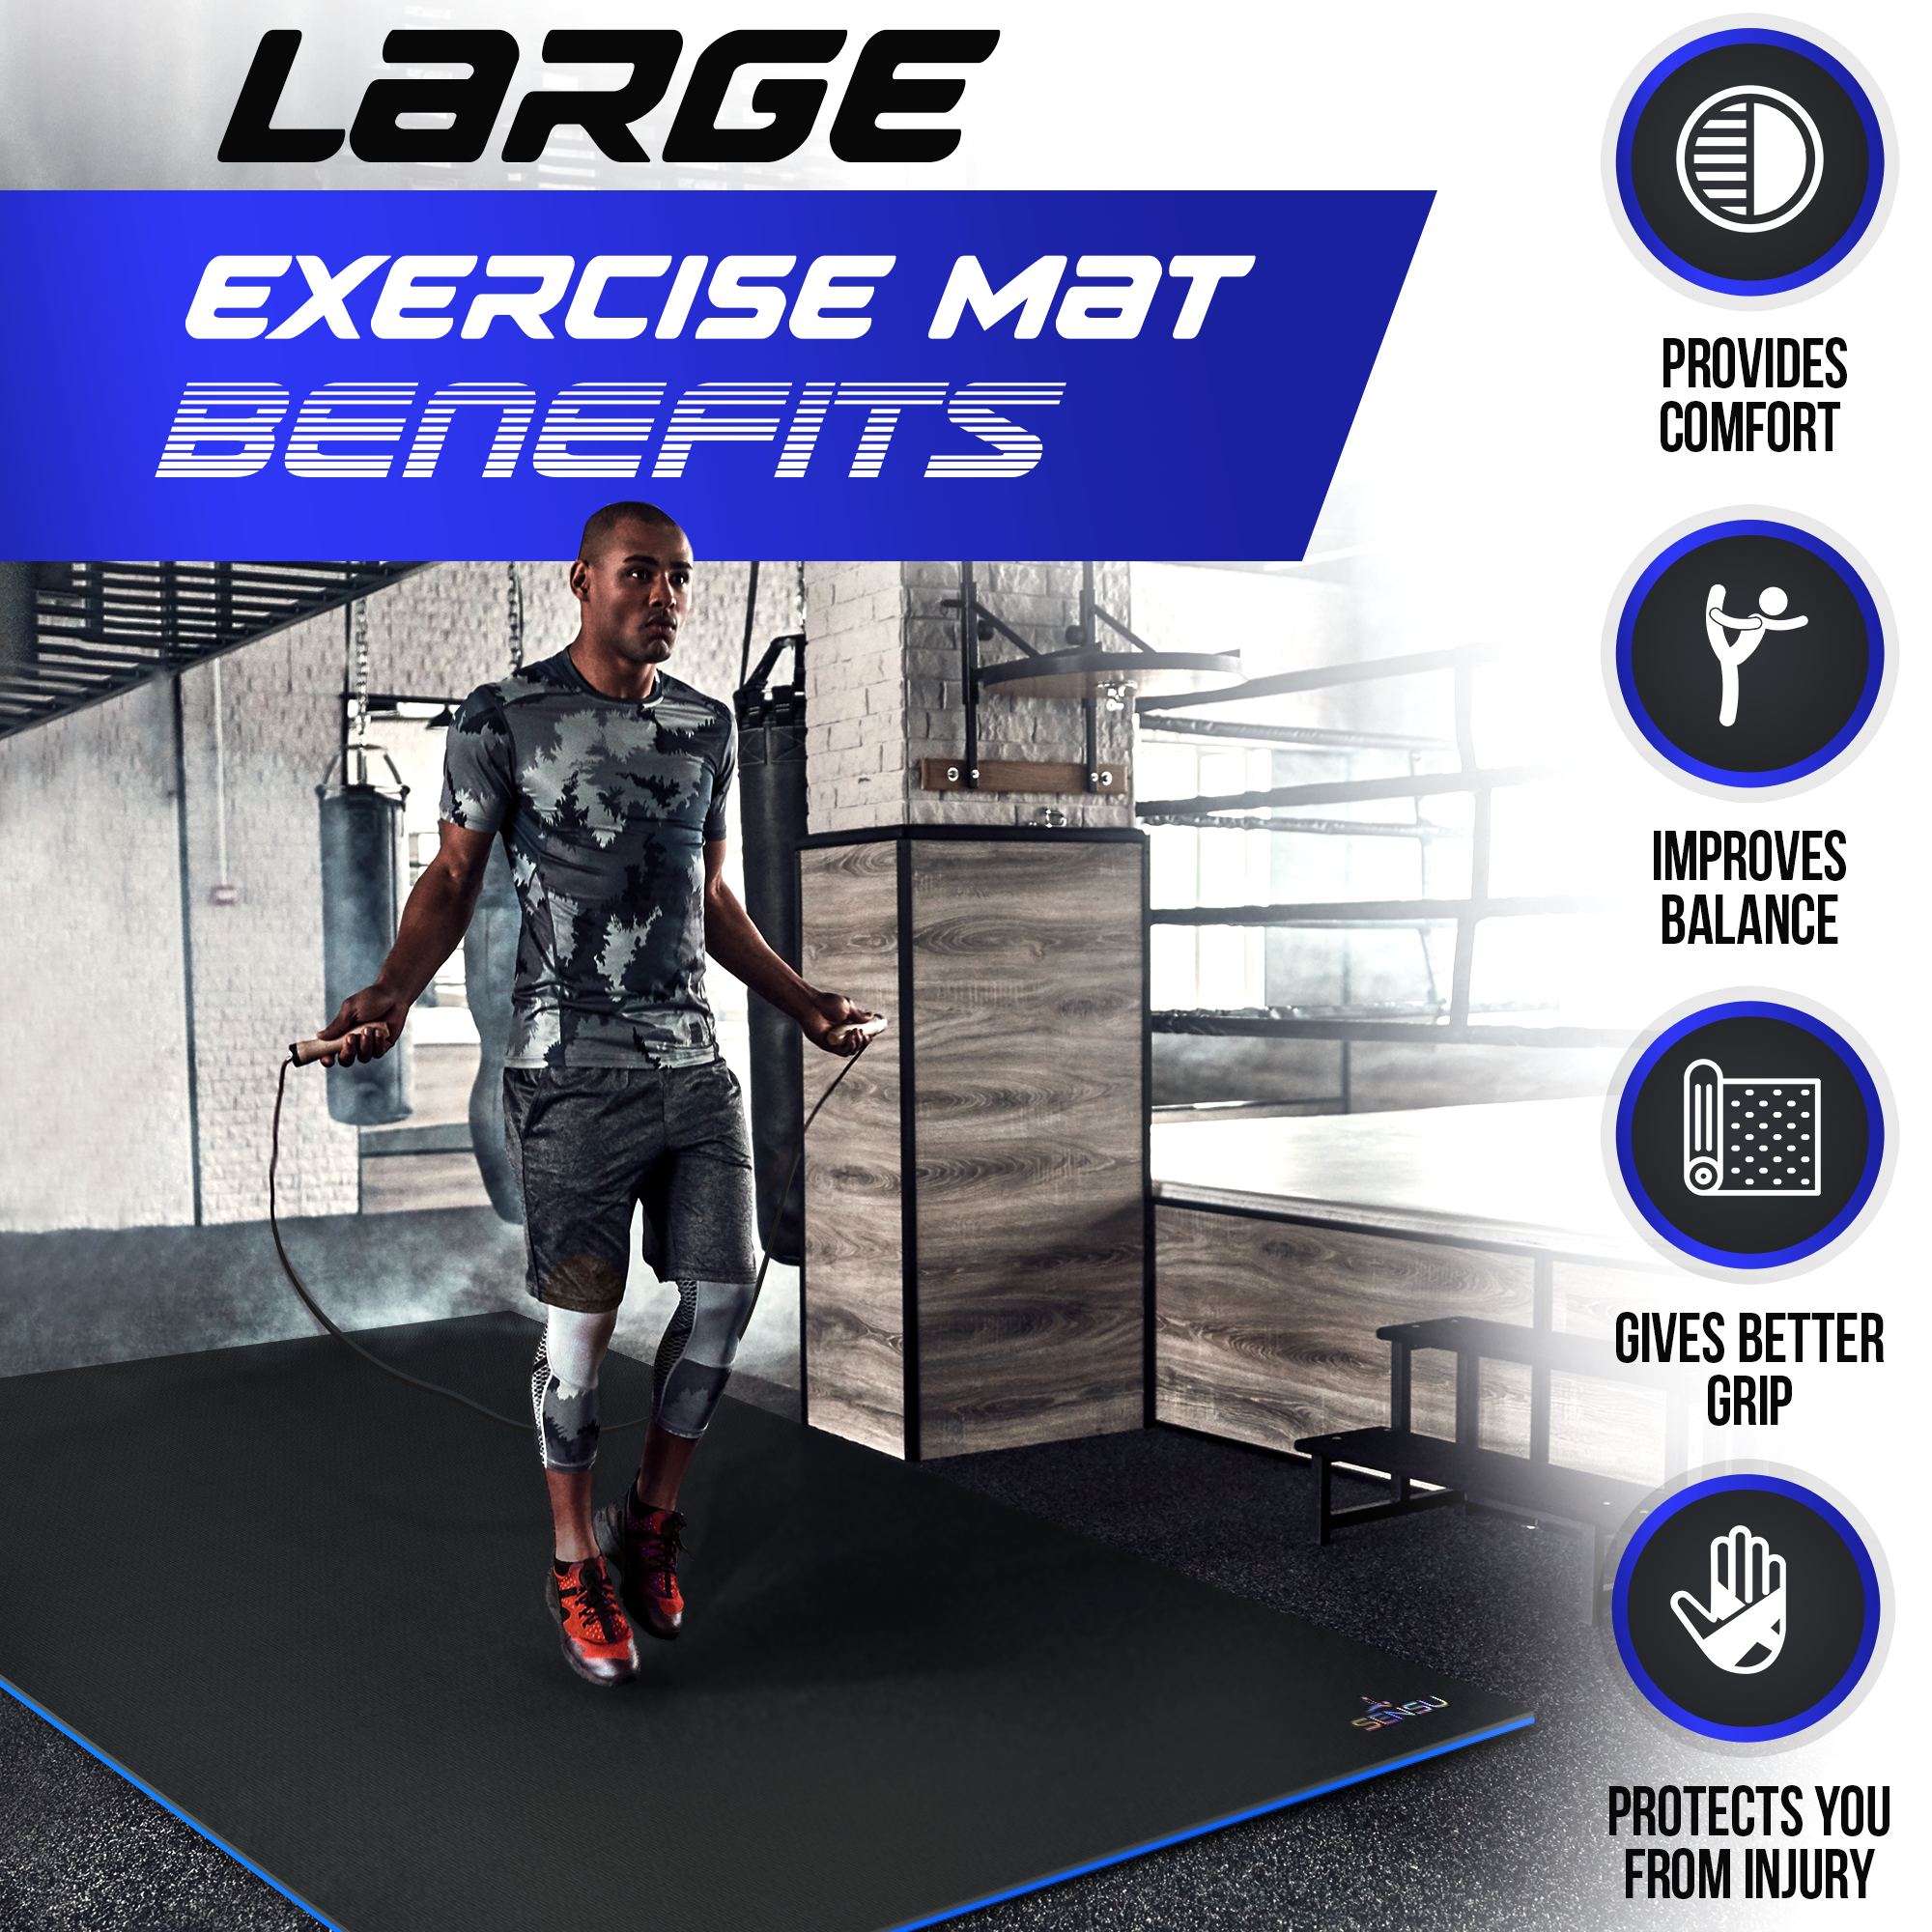 Extra Large Exercise Mat Free Exercise without Limitation